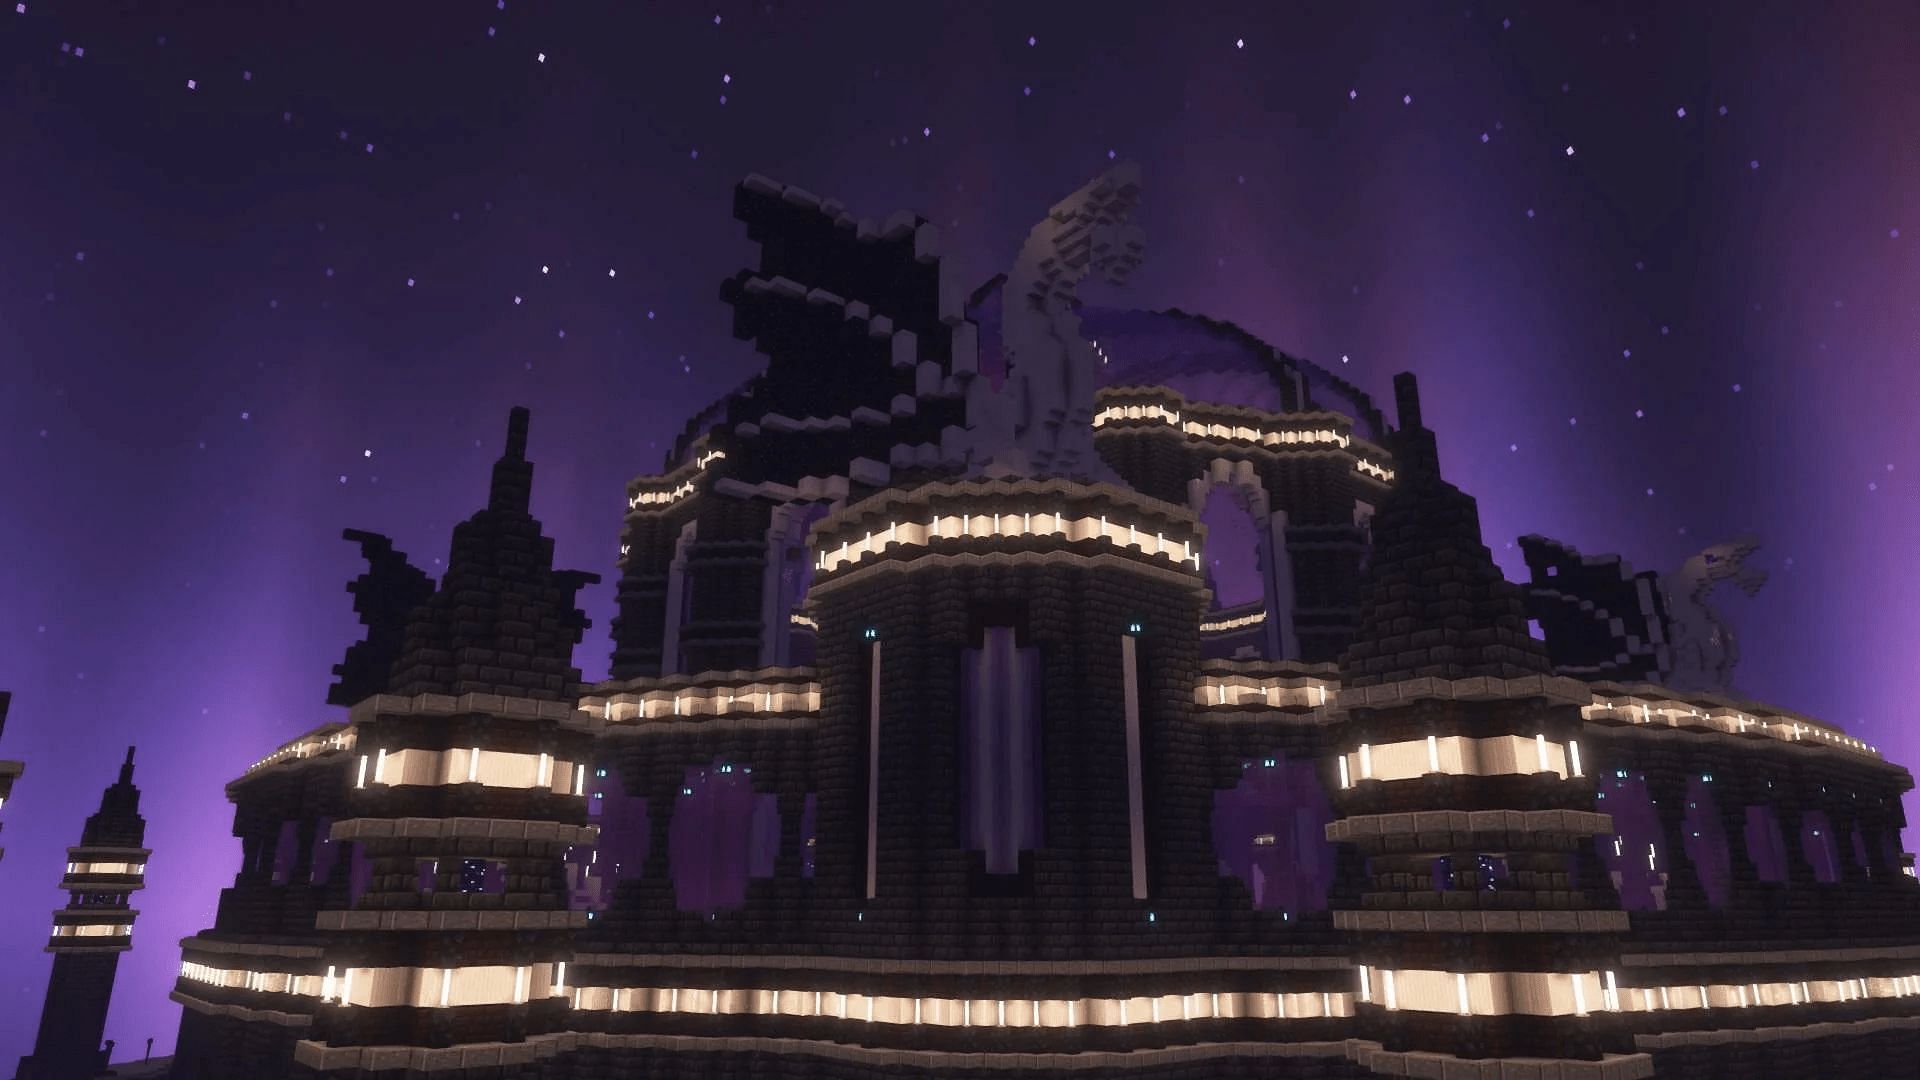 The End is a dangerous location, but a great building spot for Minecraft fans (Image via u/FoxFoil/Reddit)